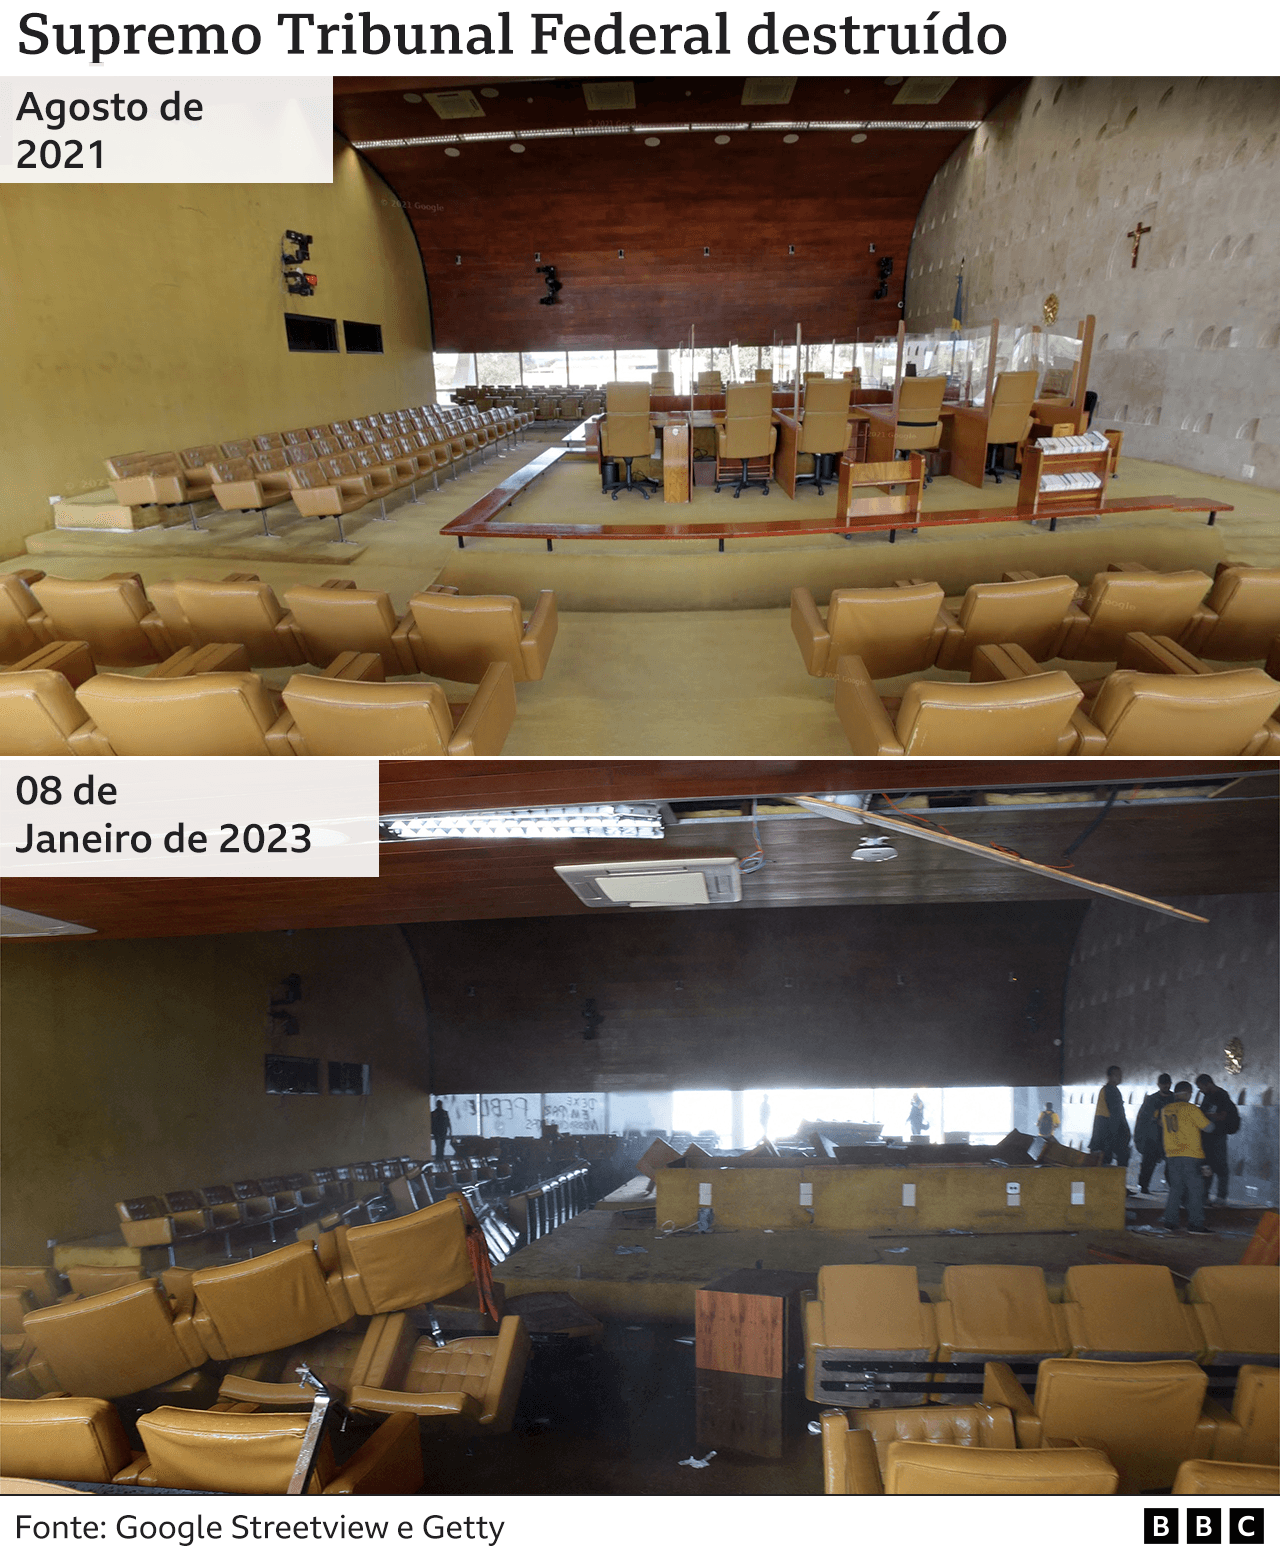 Plenário do STF em agosto de 2021, com seu auditório de cadeiras beges, e as mesmas cadeiras destruídas em 8 de janeiro de 2023